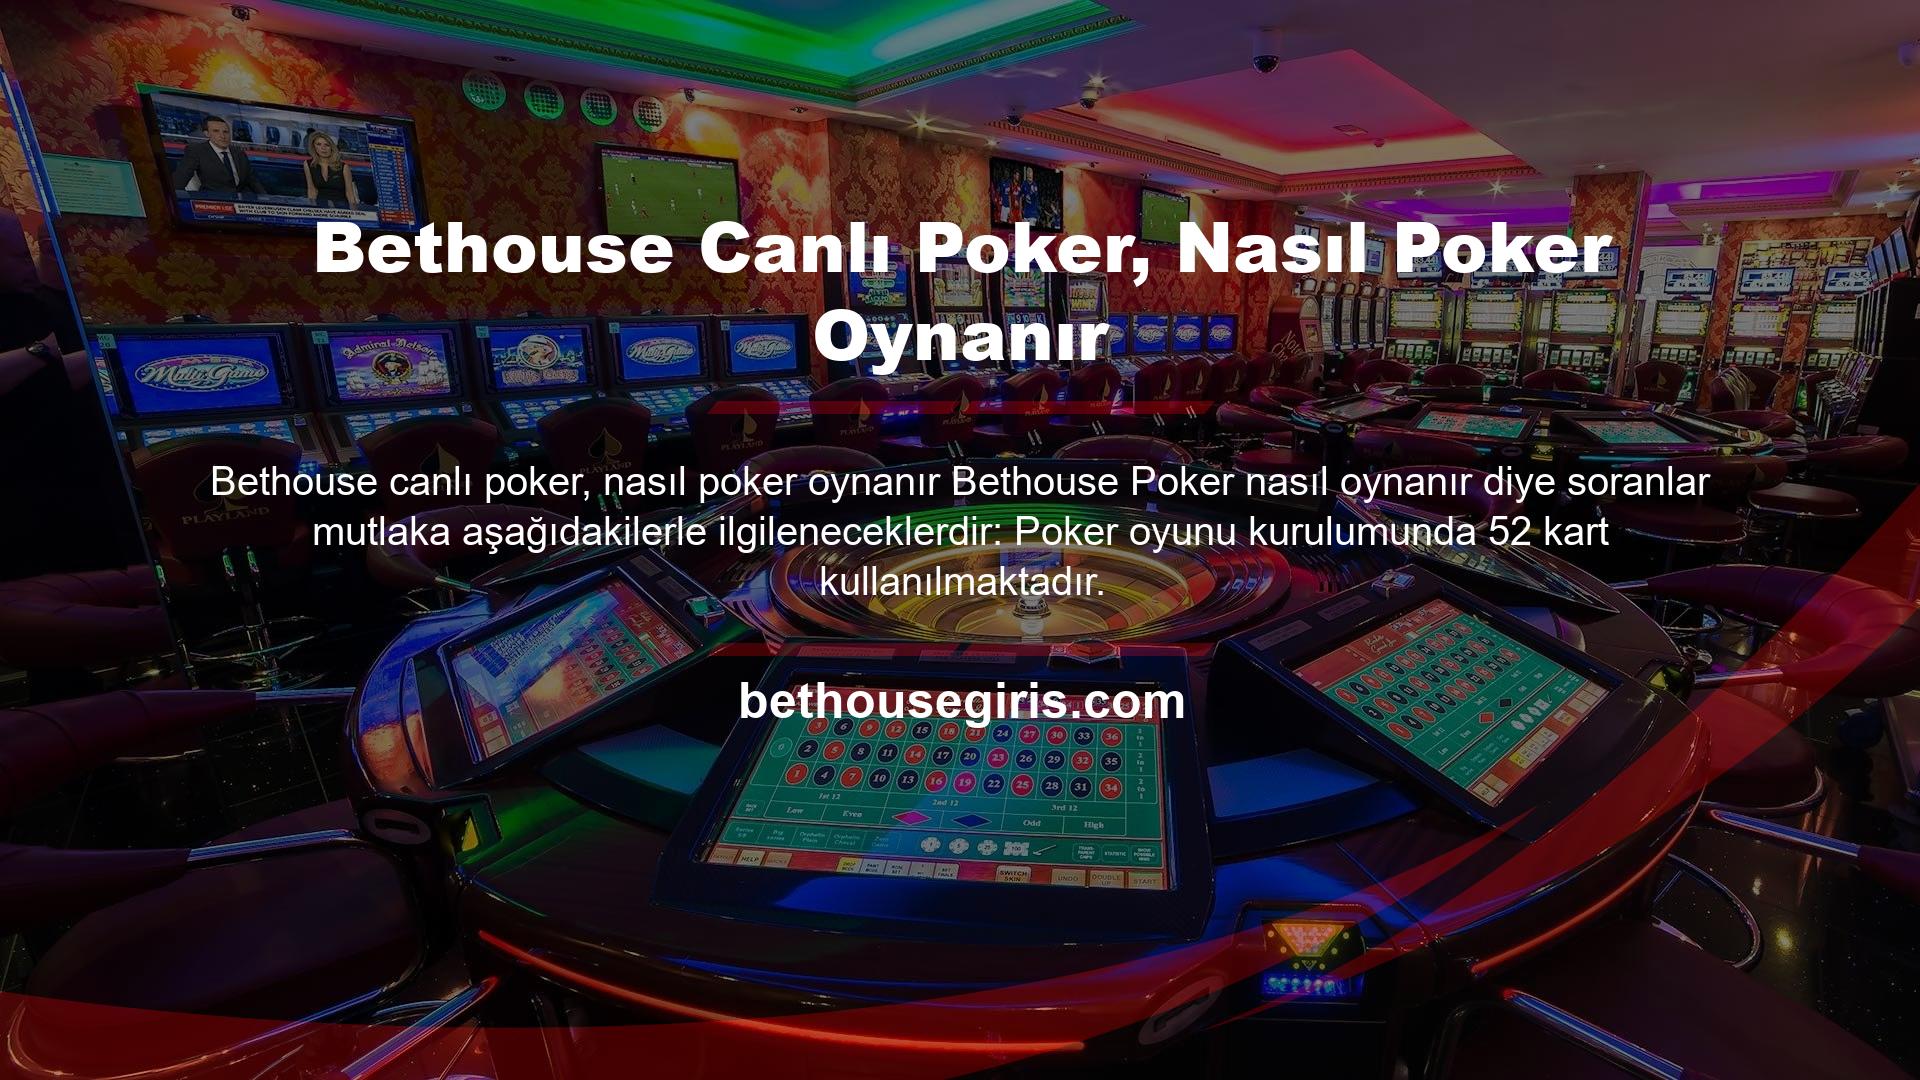 Bethouse canlı poker, pokerin nasıl oynanacağı, poker oyununun türüne bağlı değildir